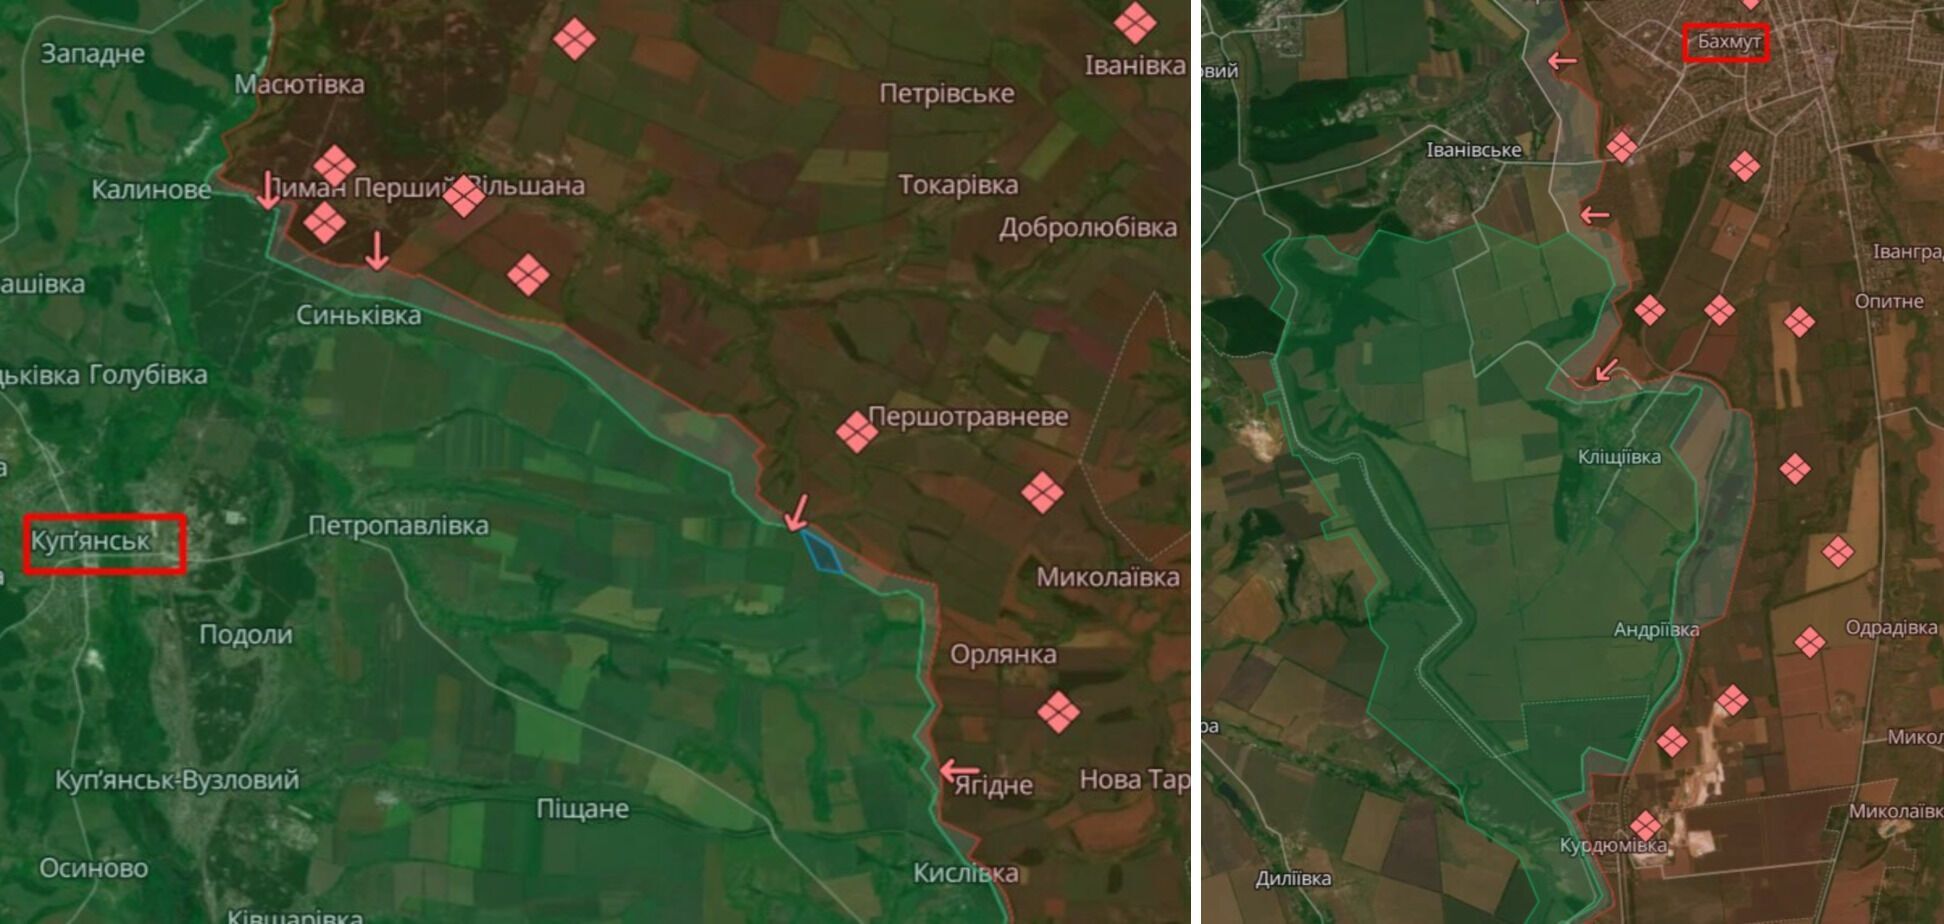 ВСУ отбили вражеские атаки возле Клещиевки и Андреевки, за сутки на фронте произошло 66 боевых столкновений – Генштаб